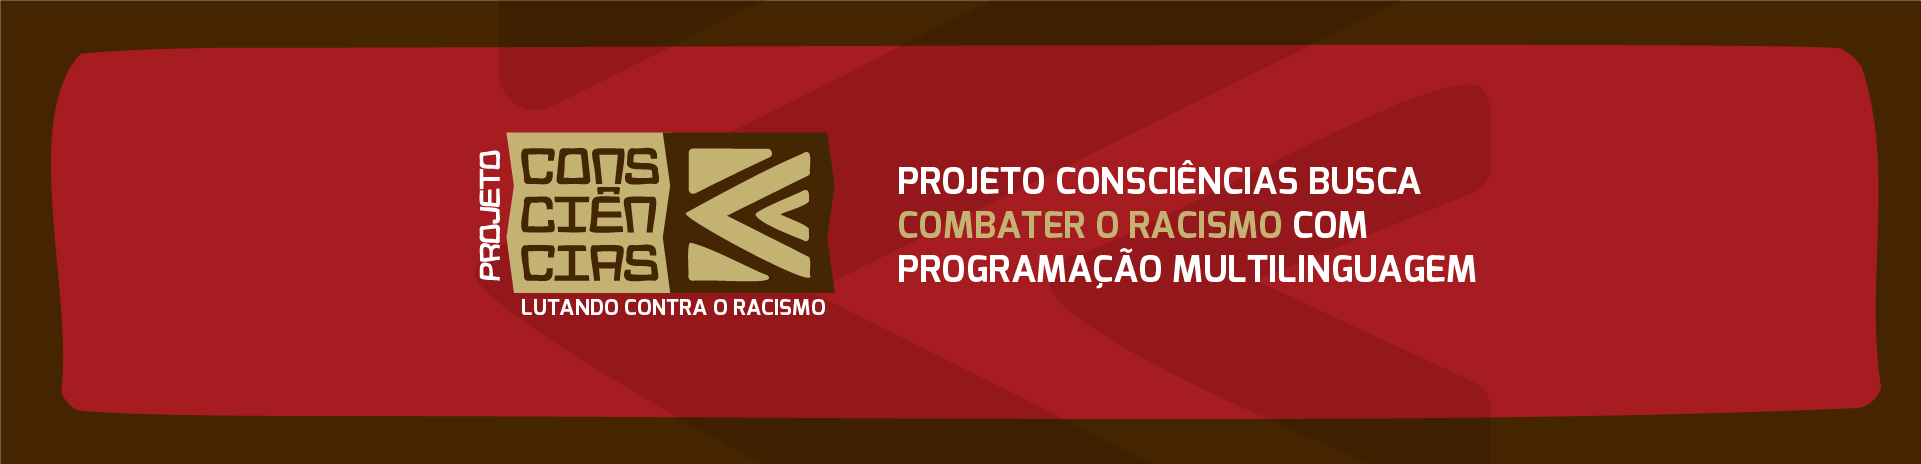 Projeto Consciências busca combater o racismo com programação multilinguagem